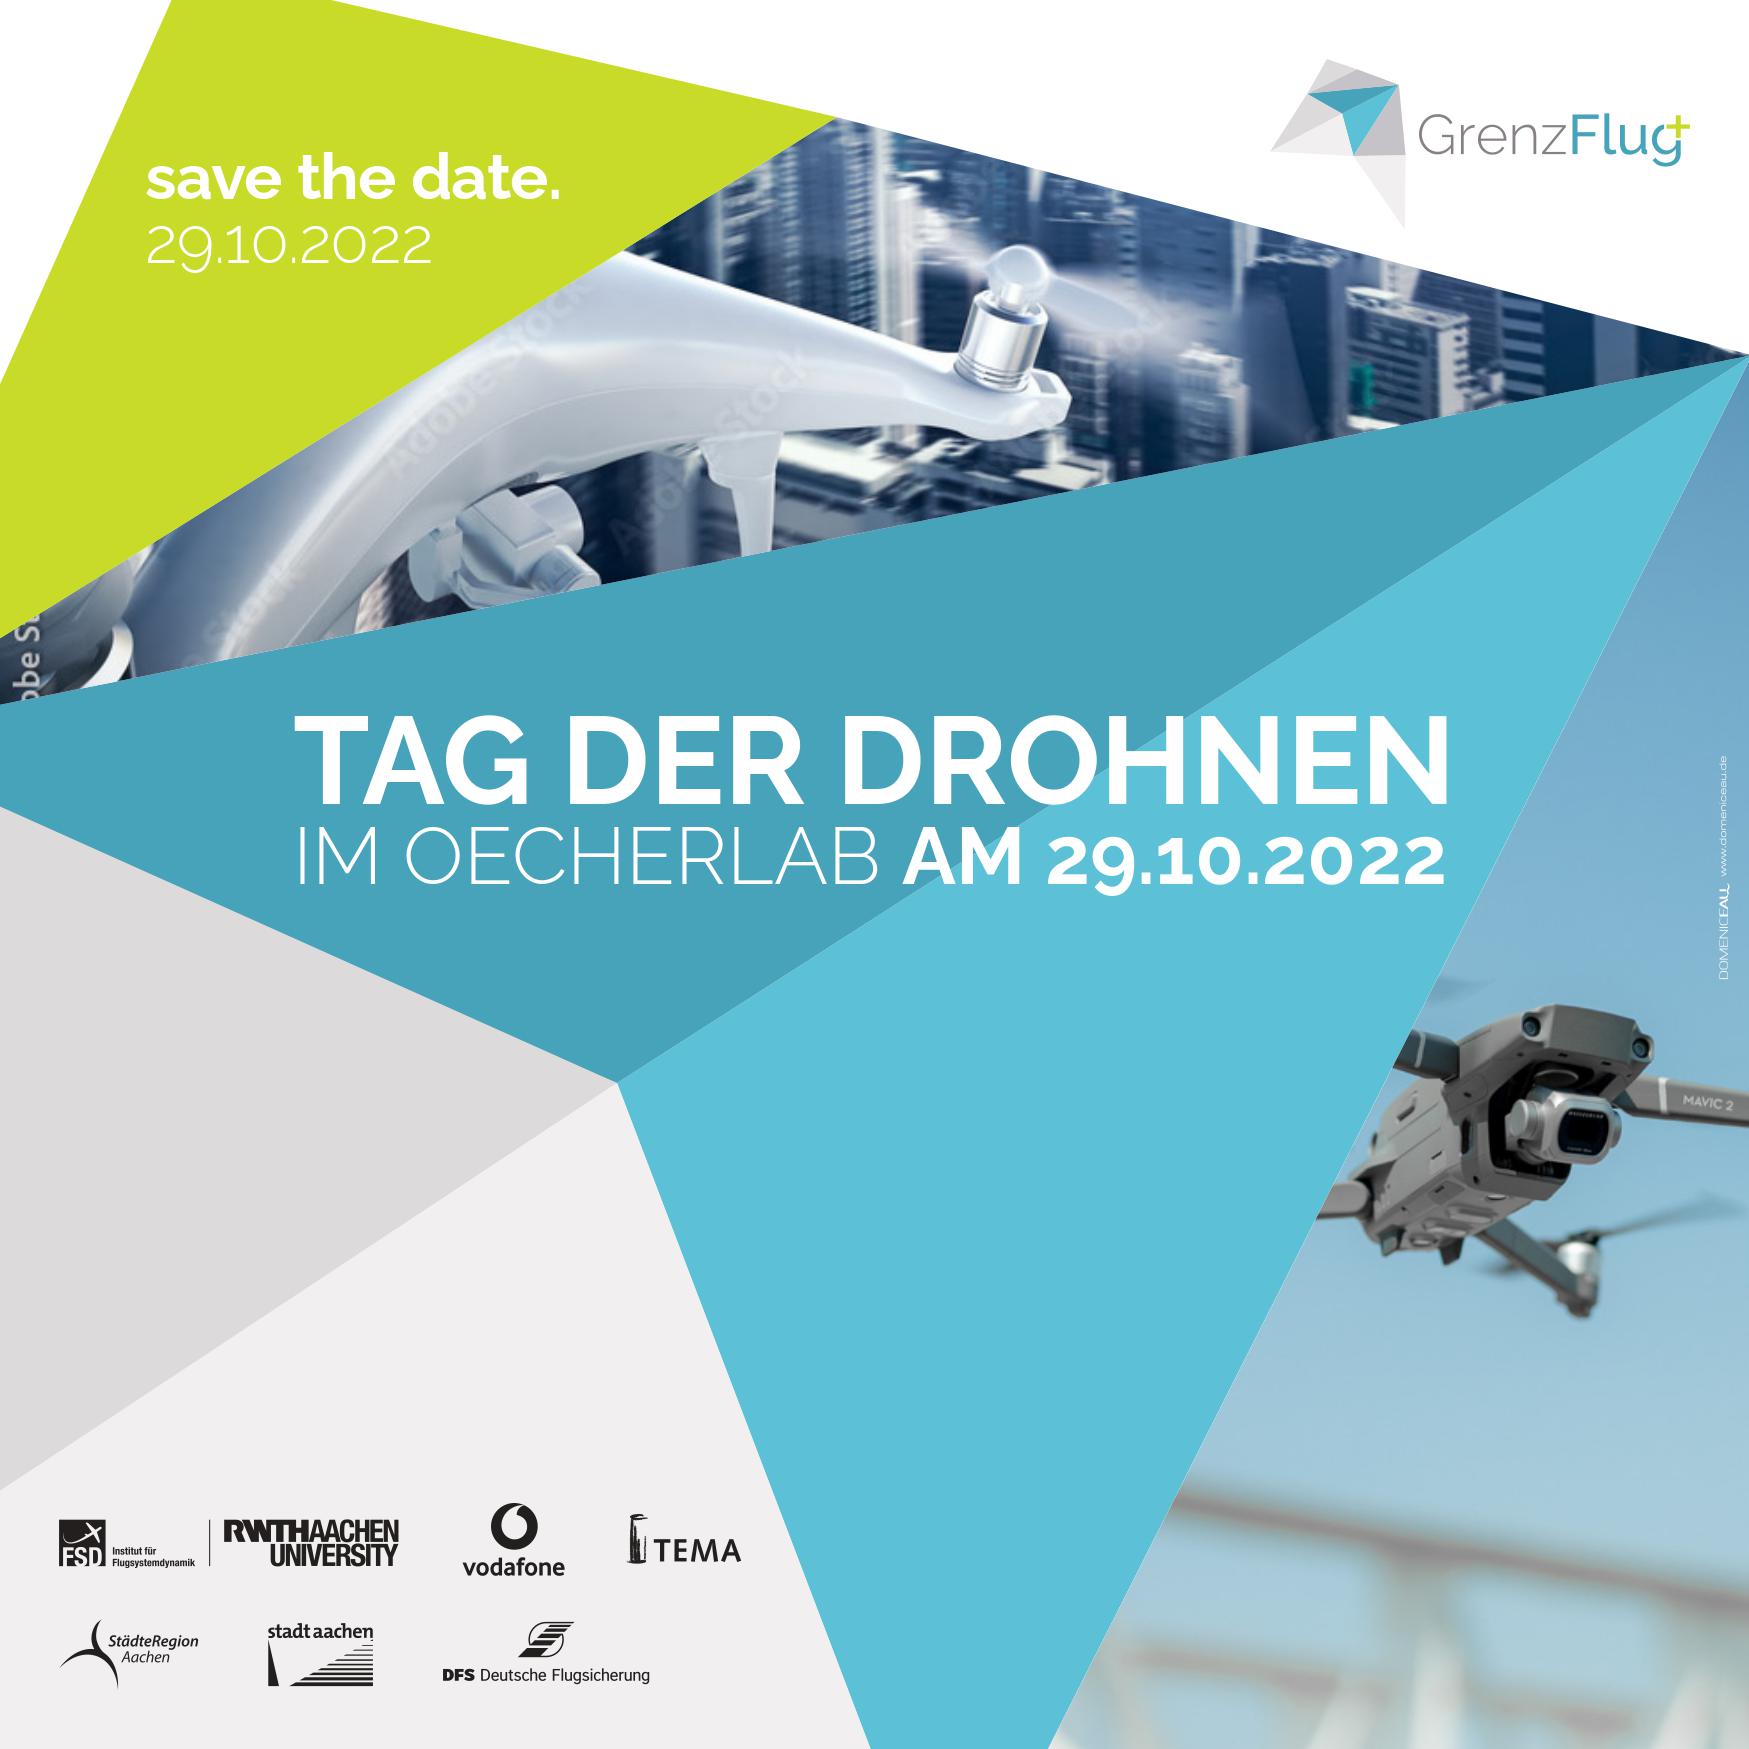 SAVE THE DATE: Tag der Drohnen im OecherLab am 29.10.2022